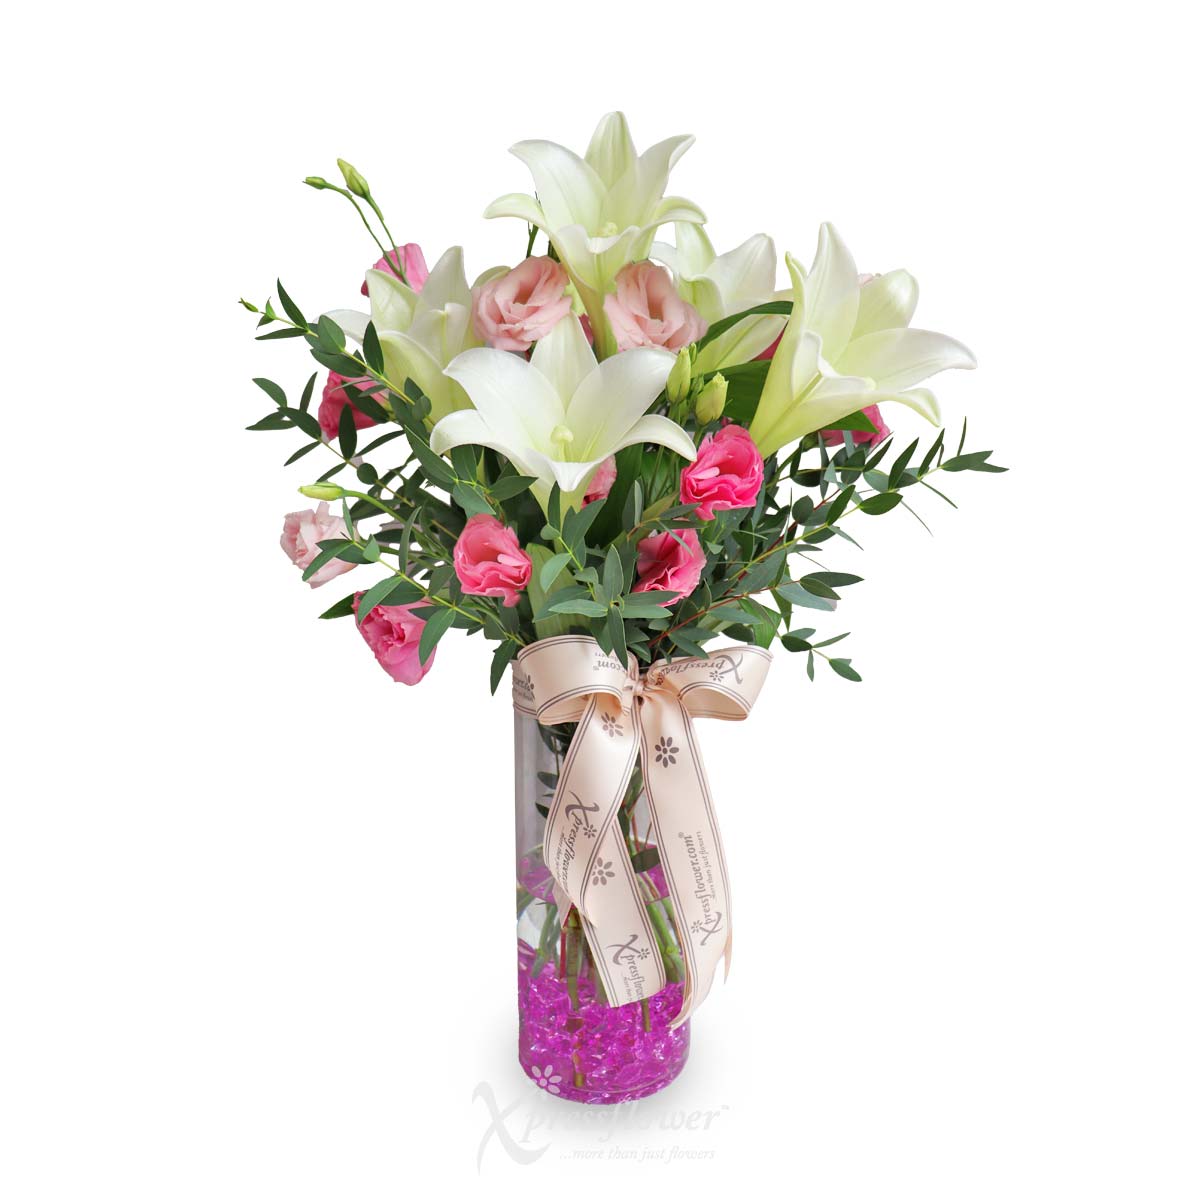 Lily Garden (5 White Lilies Vase Arrangement)